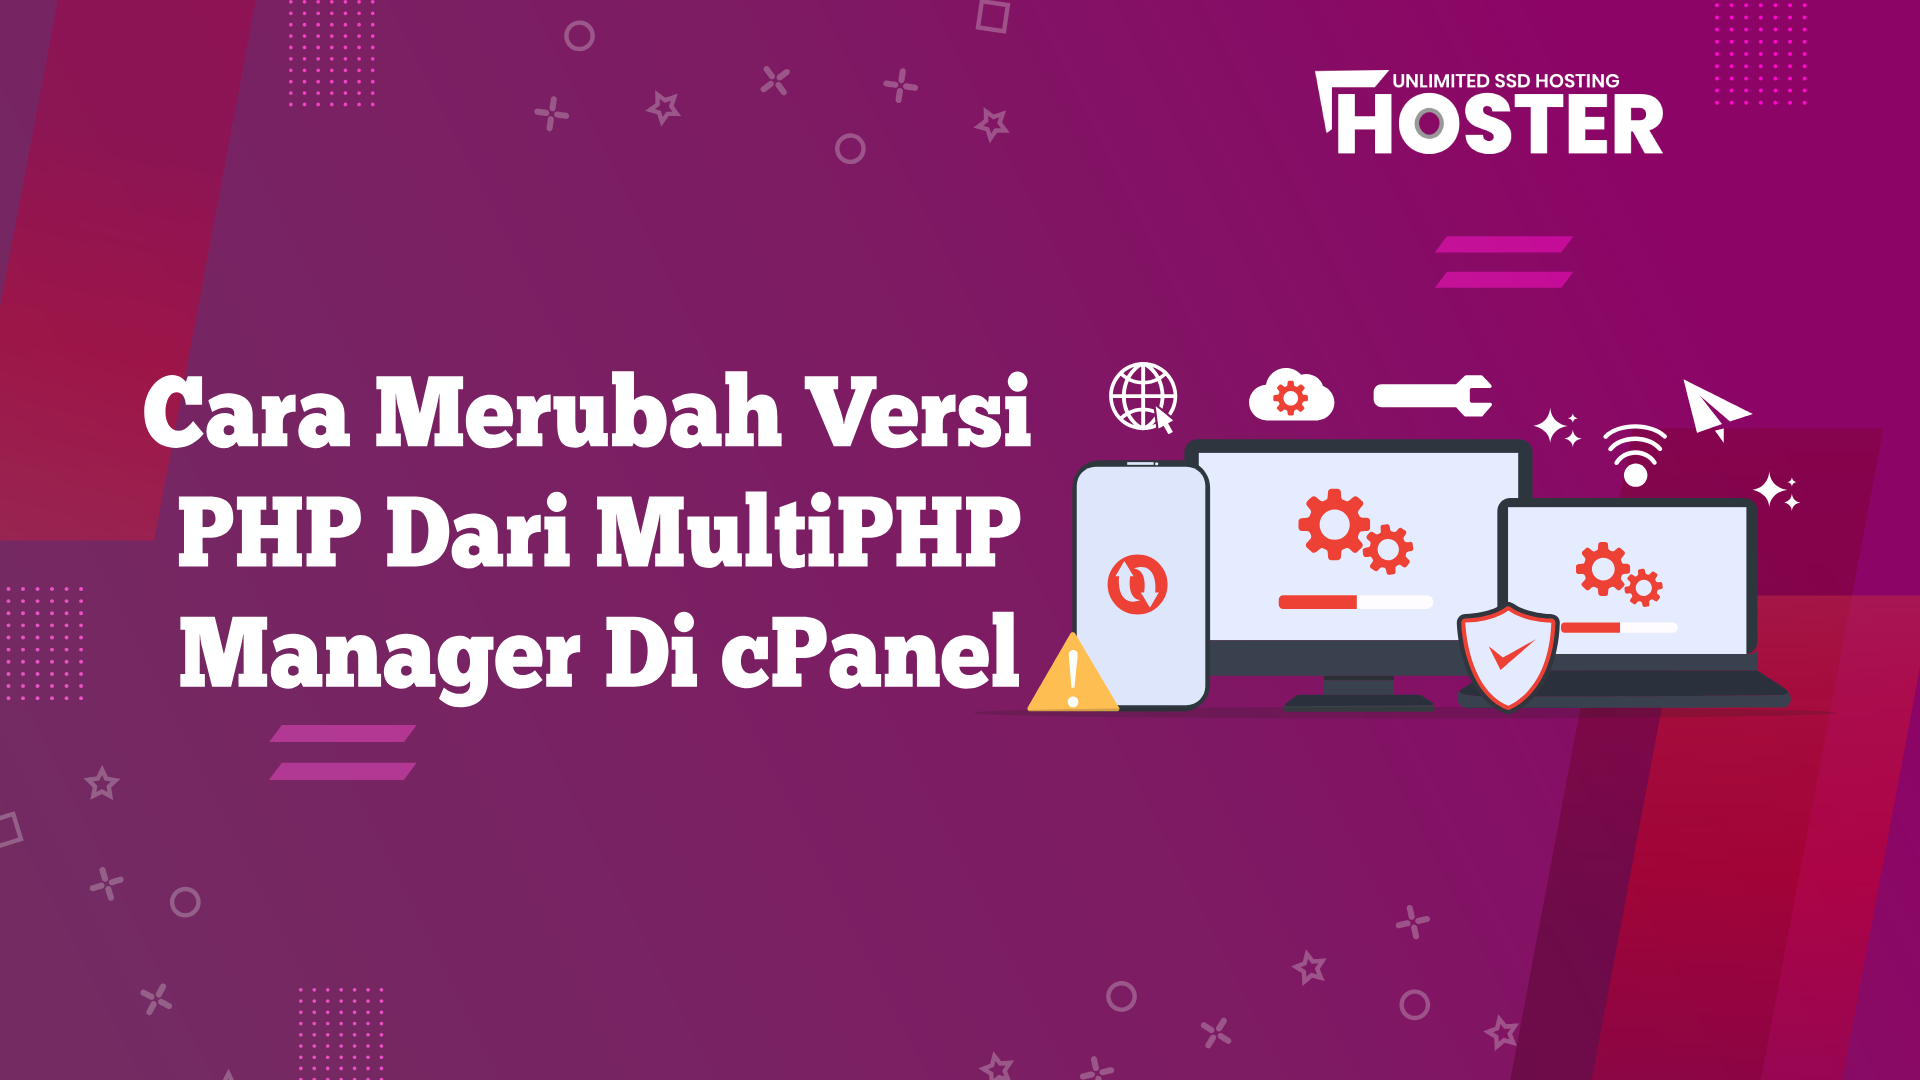 Cara Merubah Versi PHP dari MultiPHP Manager Di Cpanel